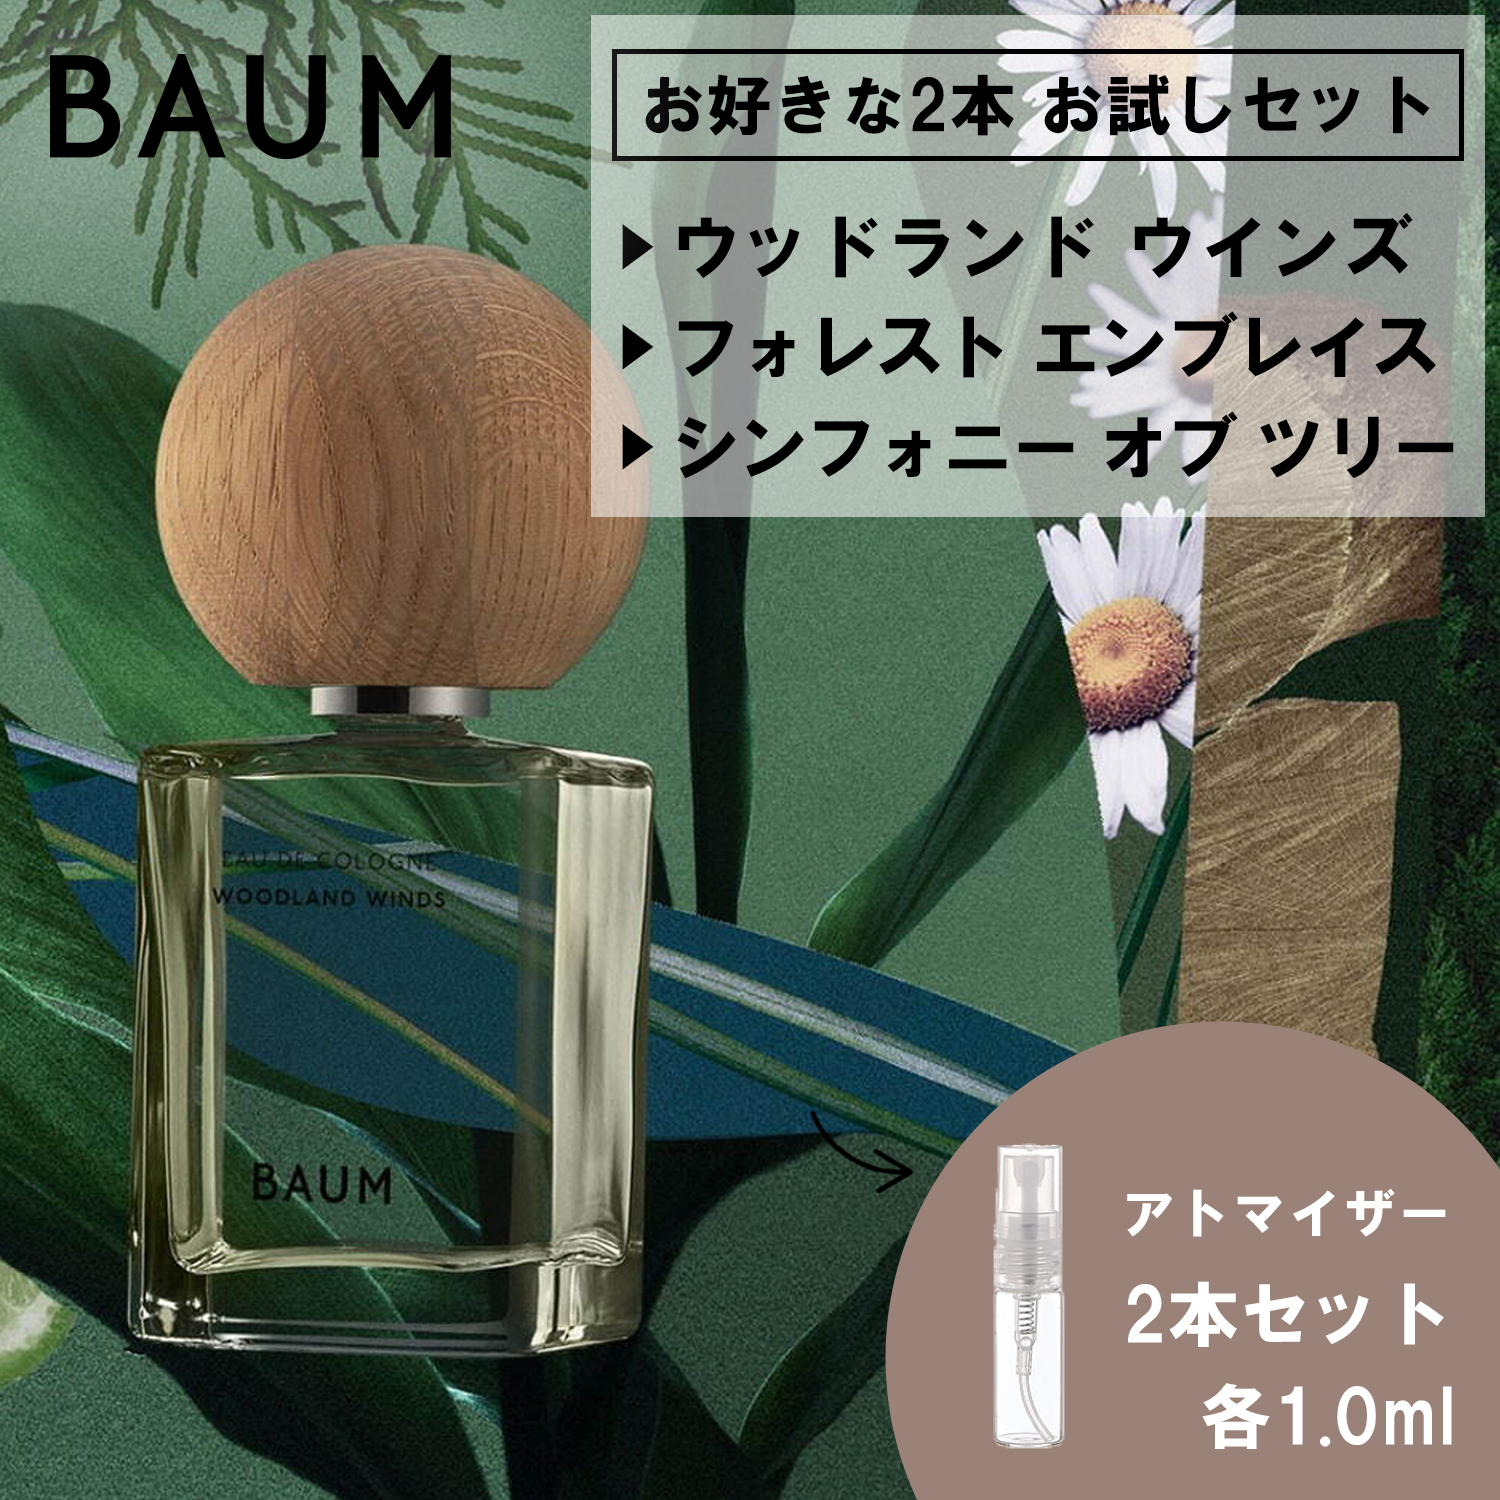 BAUM バウム 香水 お試し 1ml 選べる 2本セット 人気 メンズ レディース ユニセックス